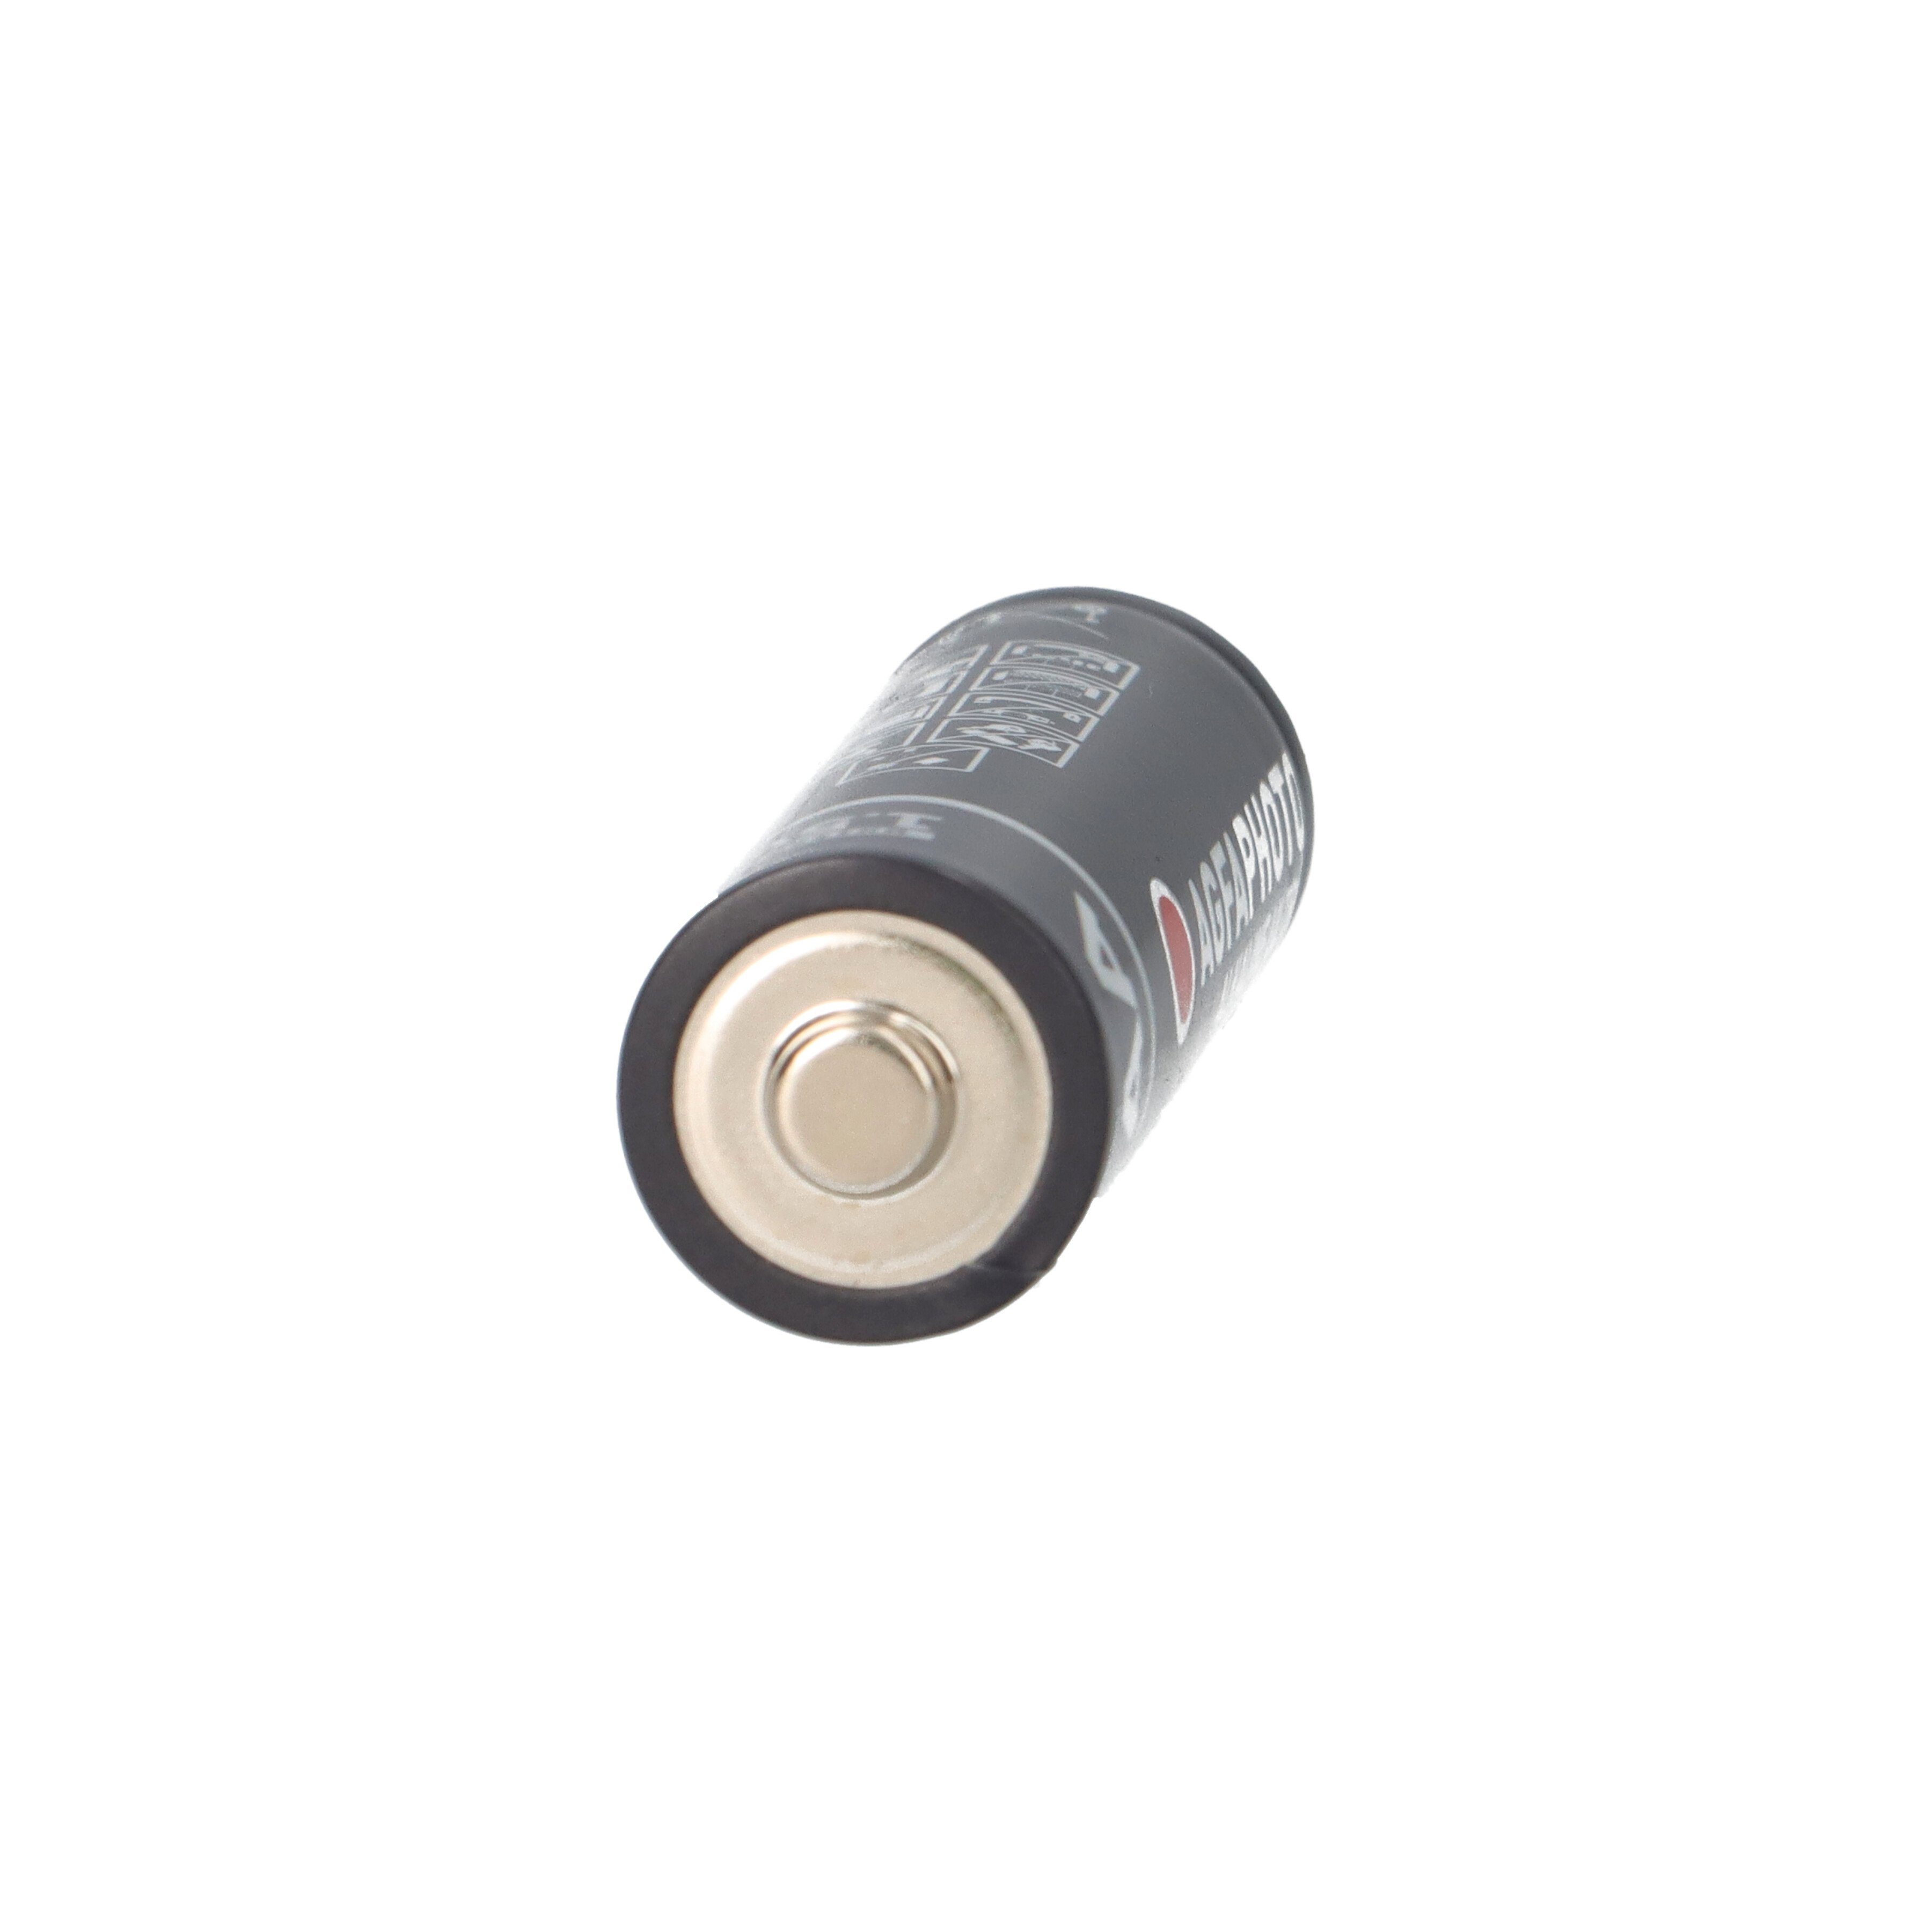 AgfaPhoto AGFAPHOTO Batterie Alkaline Blister Batterie AA Ultra 4er 1.5V